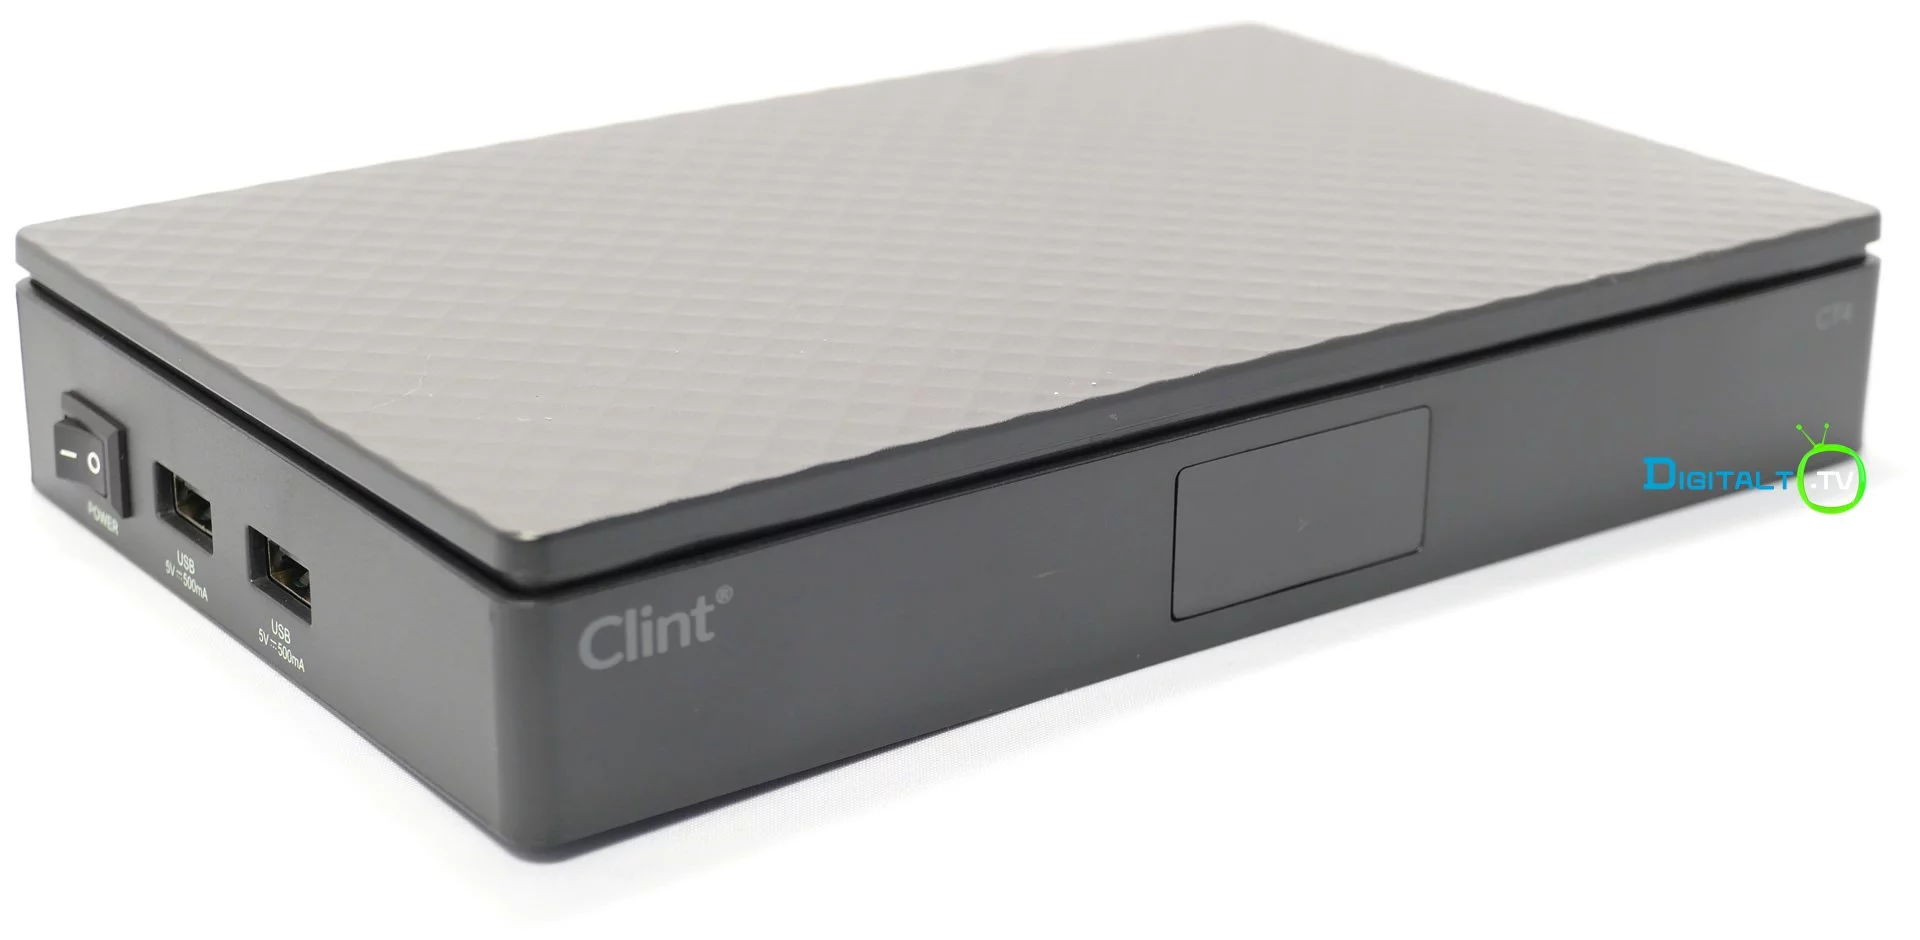 Clint CT4 skraa